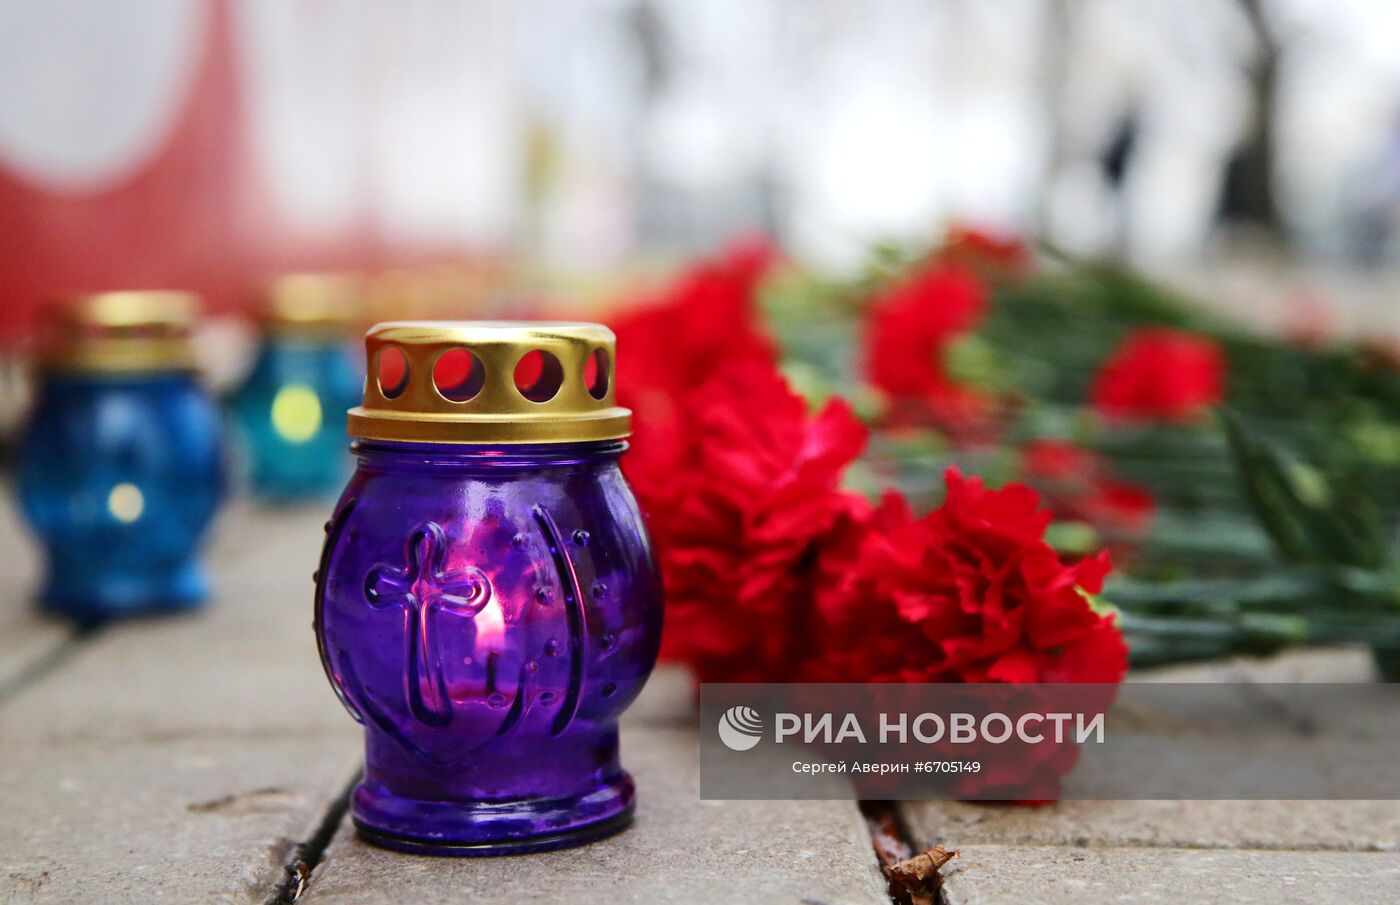 Возложение цветов к стеле "Россия" в Донецке по случаю трагедии в Кемеровской области 